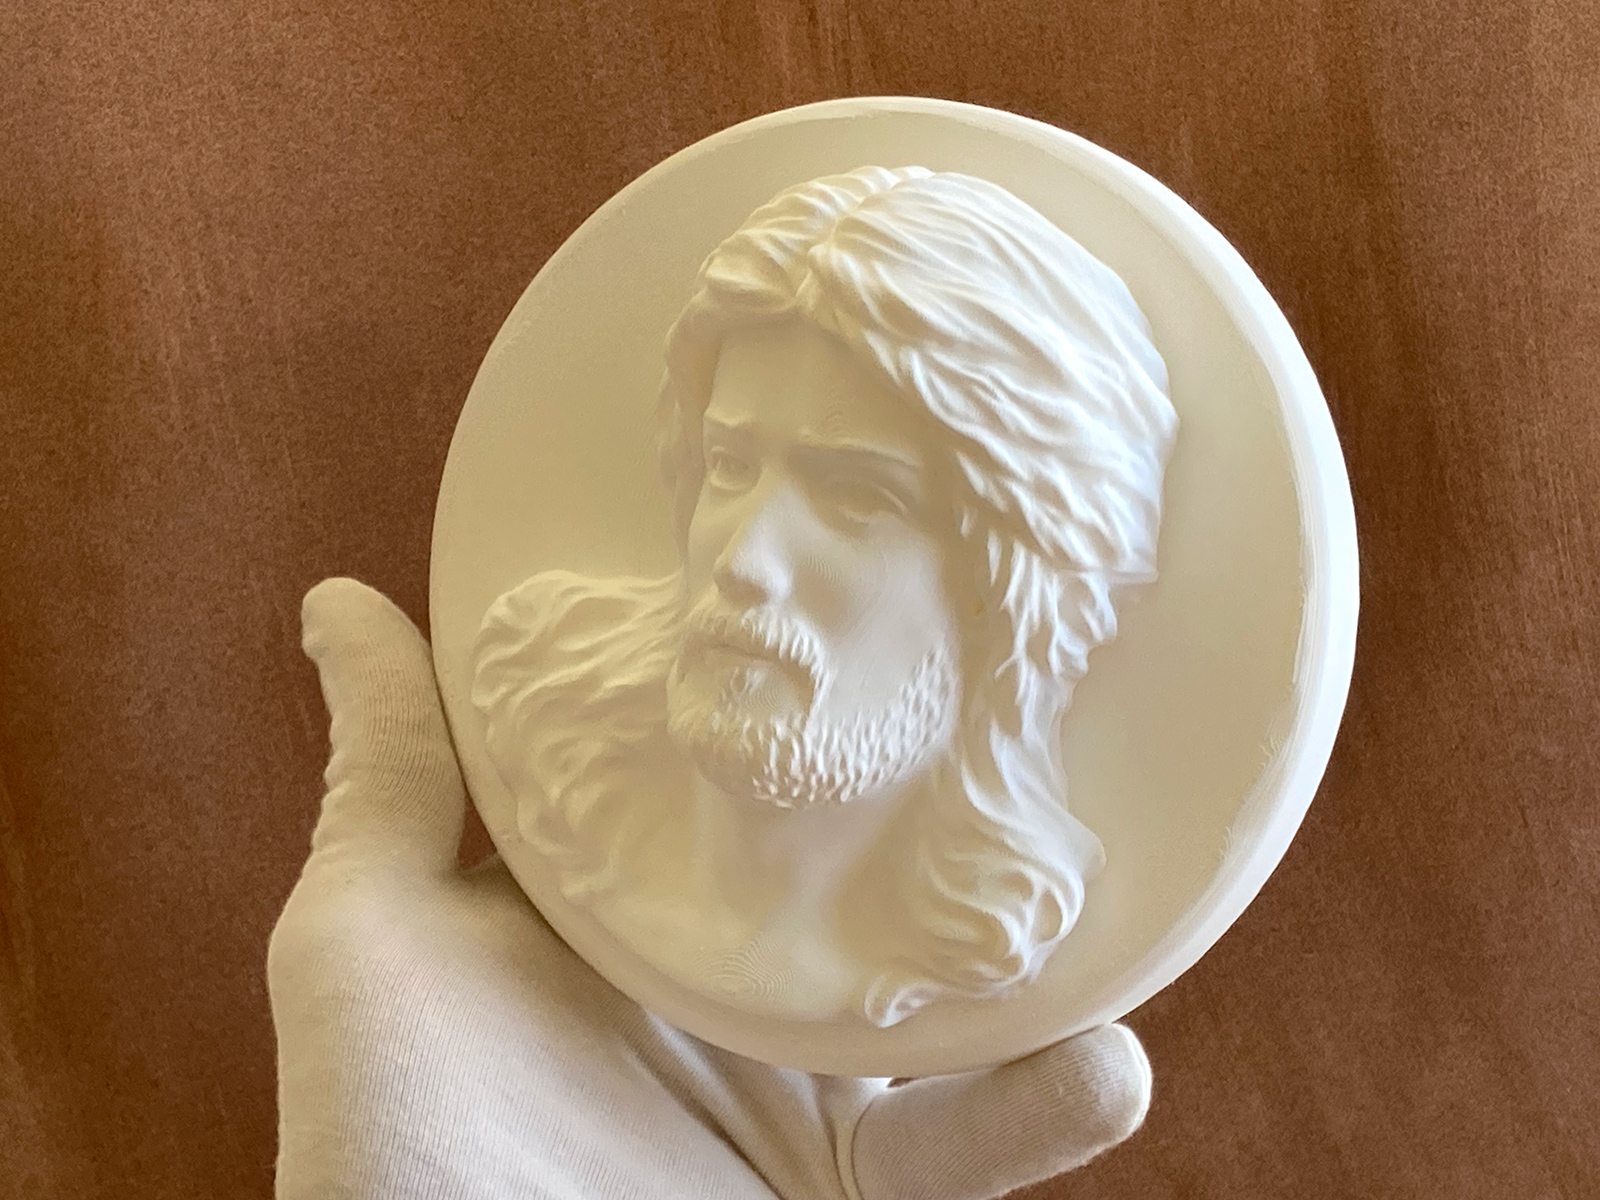 3D Printed Sculpture of Jesus Christ Portrait